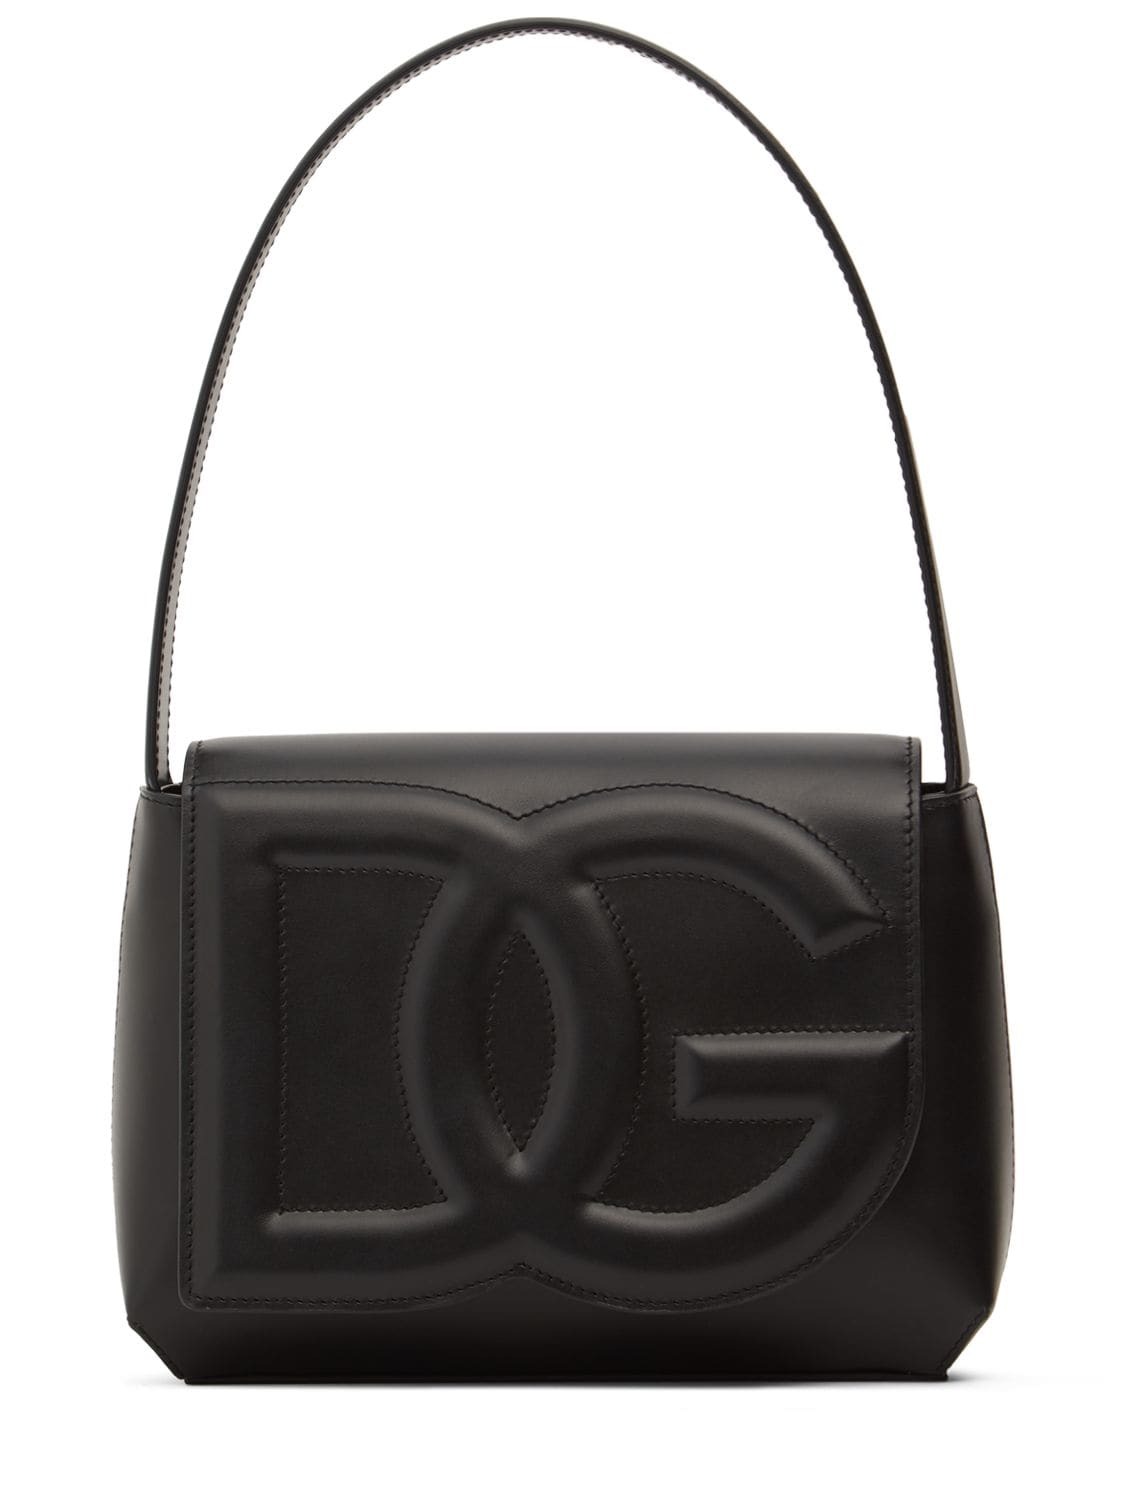 DOLCE & GABBANA Logo Leather Shoulder Bag in black